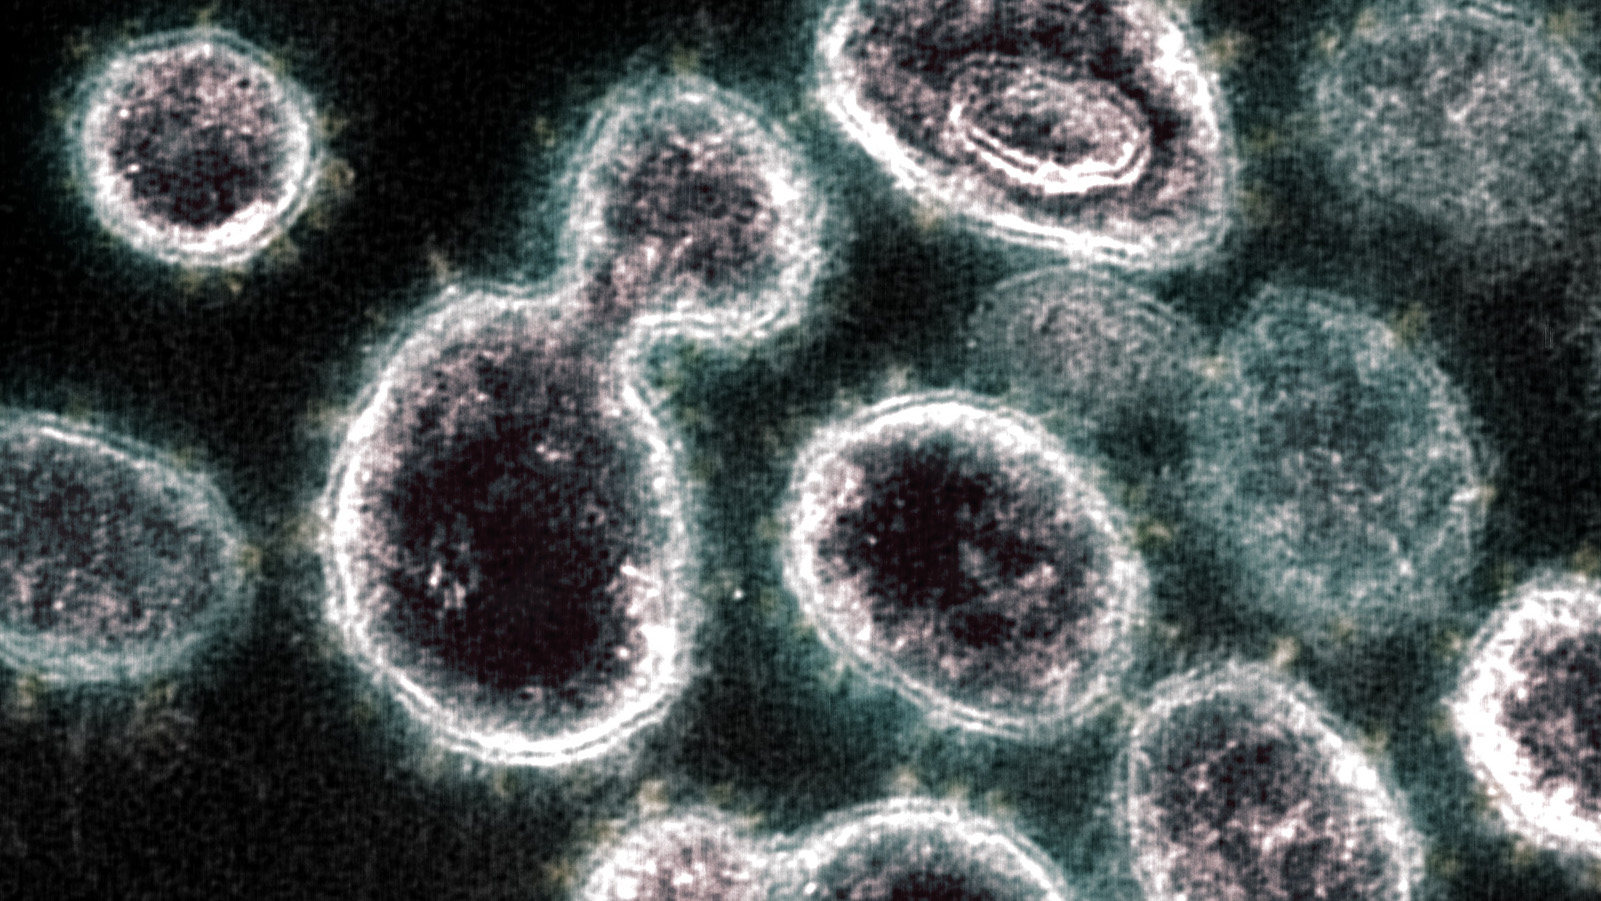 SARS-COV-2 koronavírus, transzmissziós elektronmikroszkópos felvétel, orrás: Flickr/NIH Image Gallery/NIAID-RML